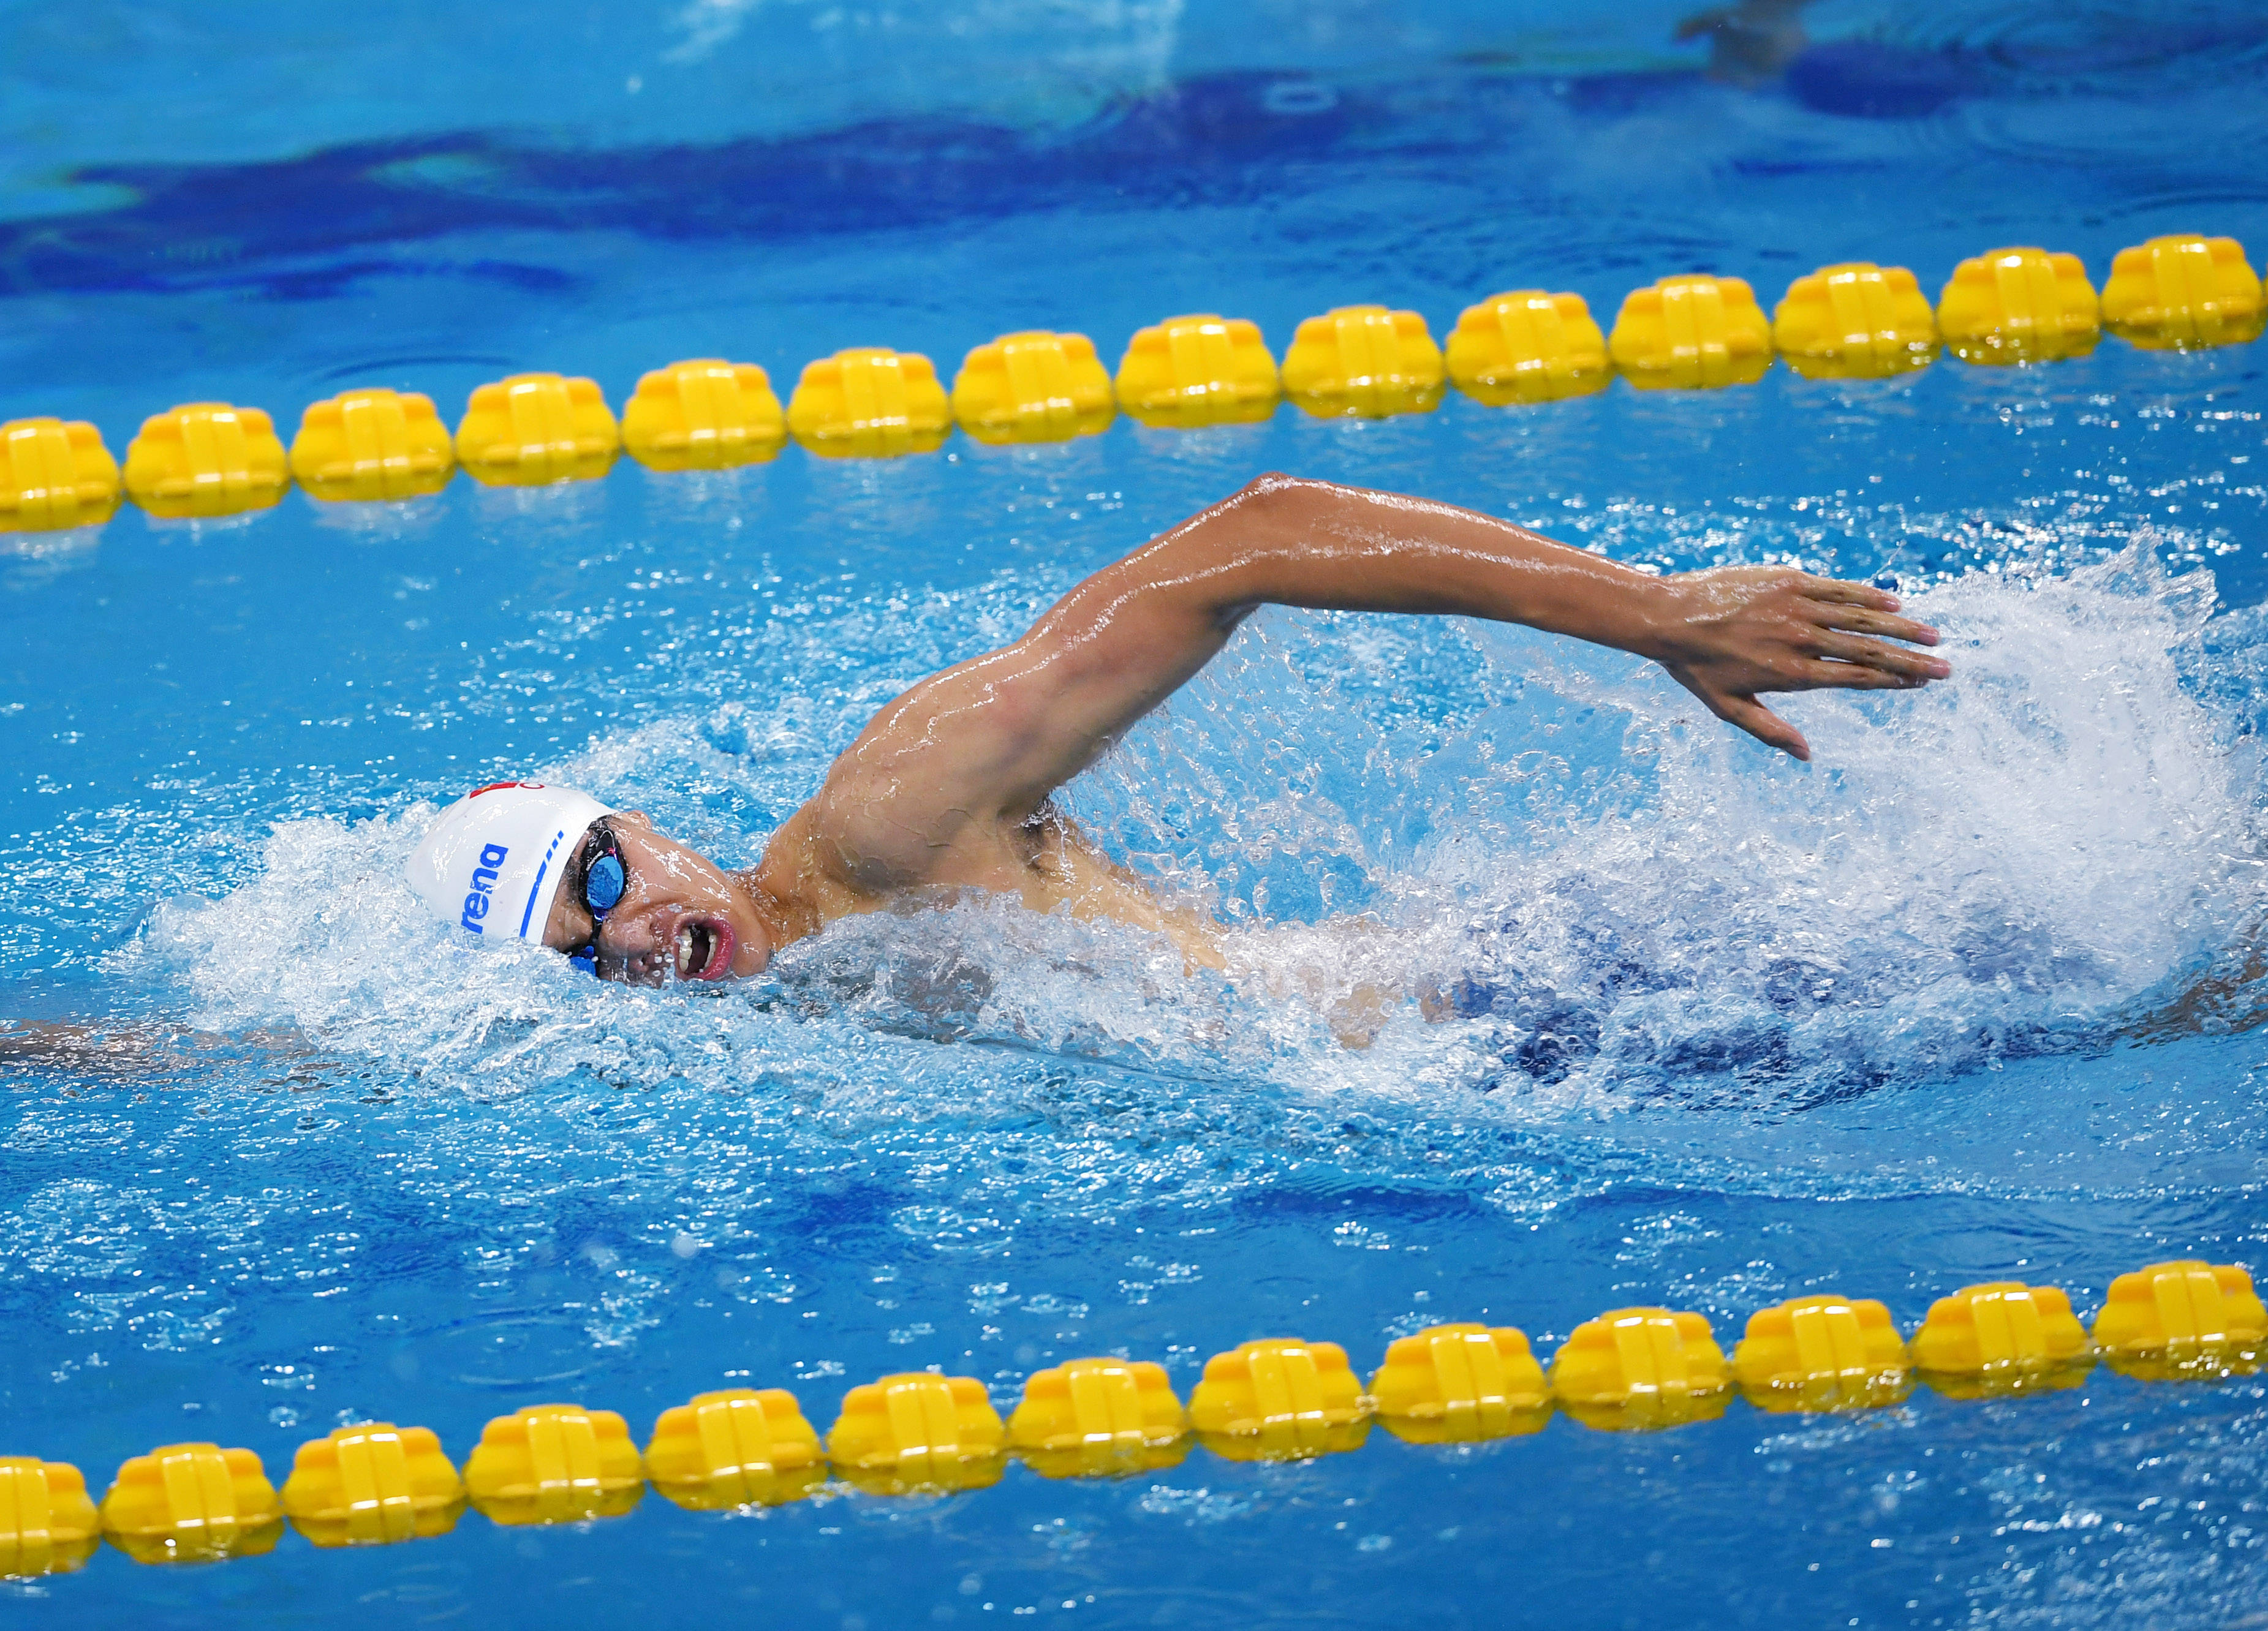 当日,在山东青岛举行的2020全国游泳冠军赛暨东京奥运会达标赛男子400